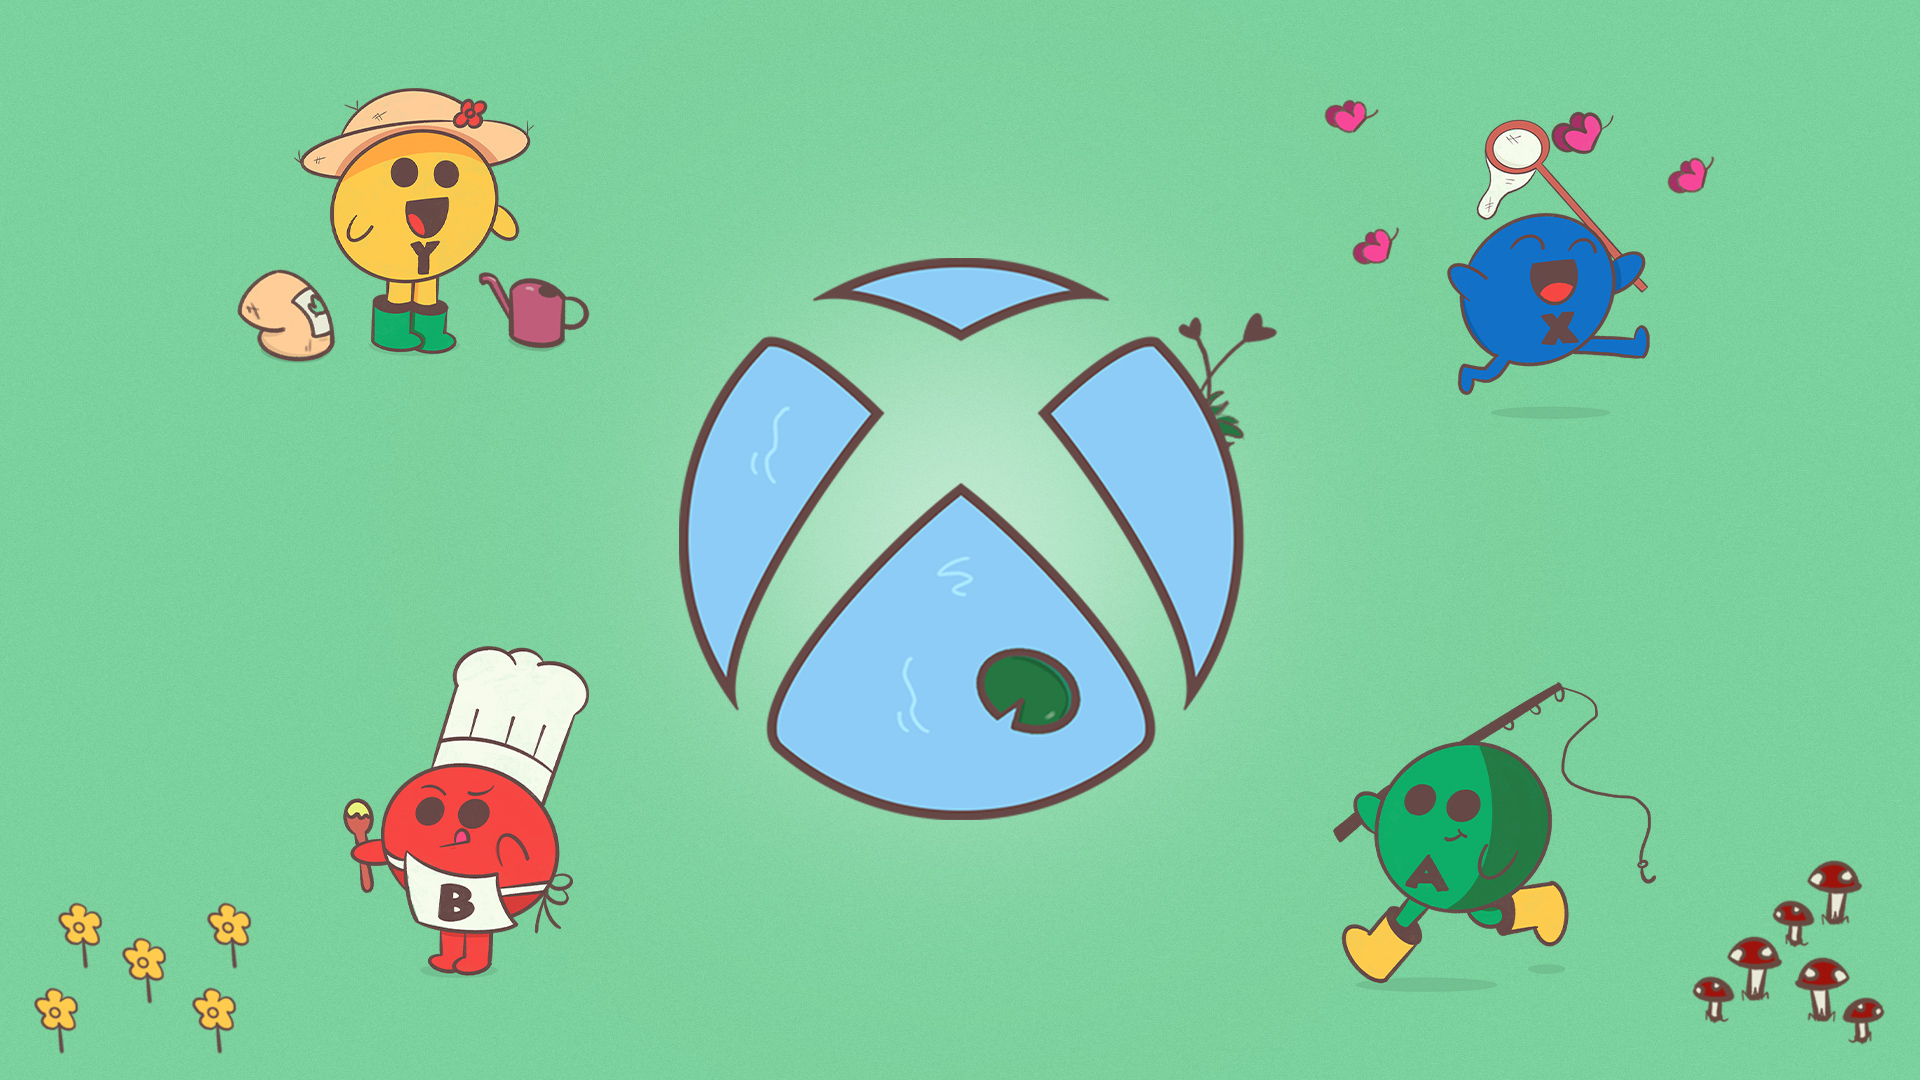 Xbox Sphere im Cartoon-Stil vor einem blauen Teichhintergrund, einem grünen Seerosenblatt im unteren Blütenblatt und Schilf im oberen rechten Blütenblatt. Die Kugel ist von vier Tastenfiguren umgeben. Der rote "B"-Knopf trägt eine weiße Kochmütze und hält einen Holzlöffel, der gelbe "Y"-Knopf hat einen Beutel mit Erde und eine Gießkanne, der blaue "X"-Knopf jagt rosa Schmetterlinge mit einem Netz und der grüne "A"-Knopf hält eine Angelrute.